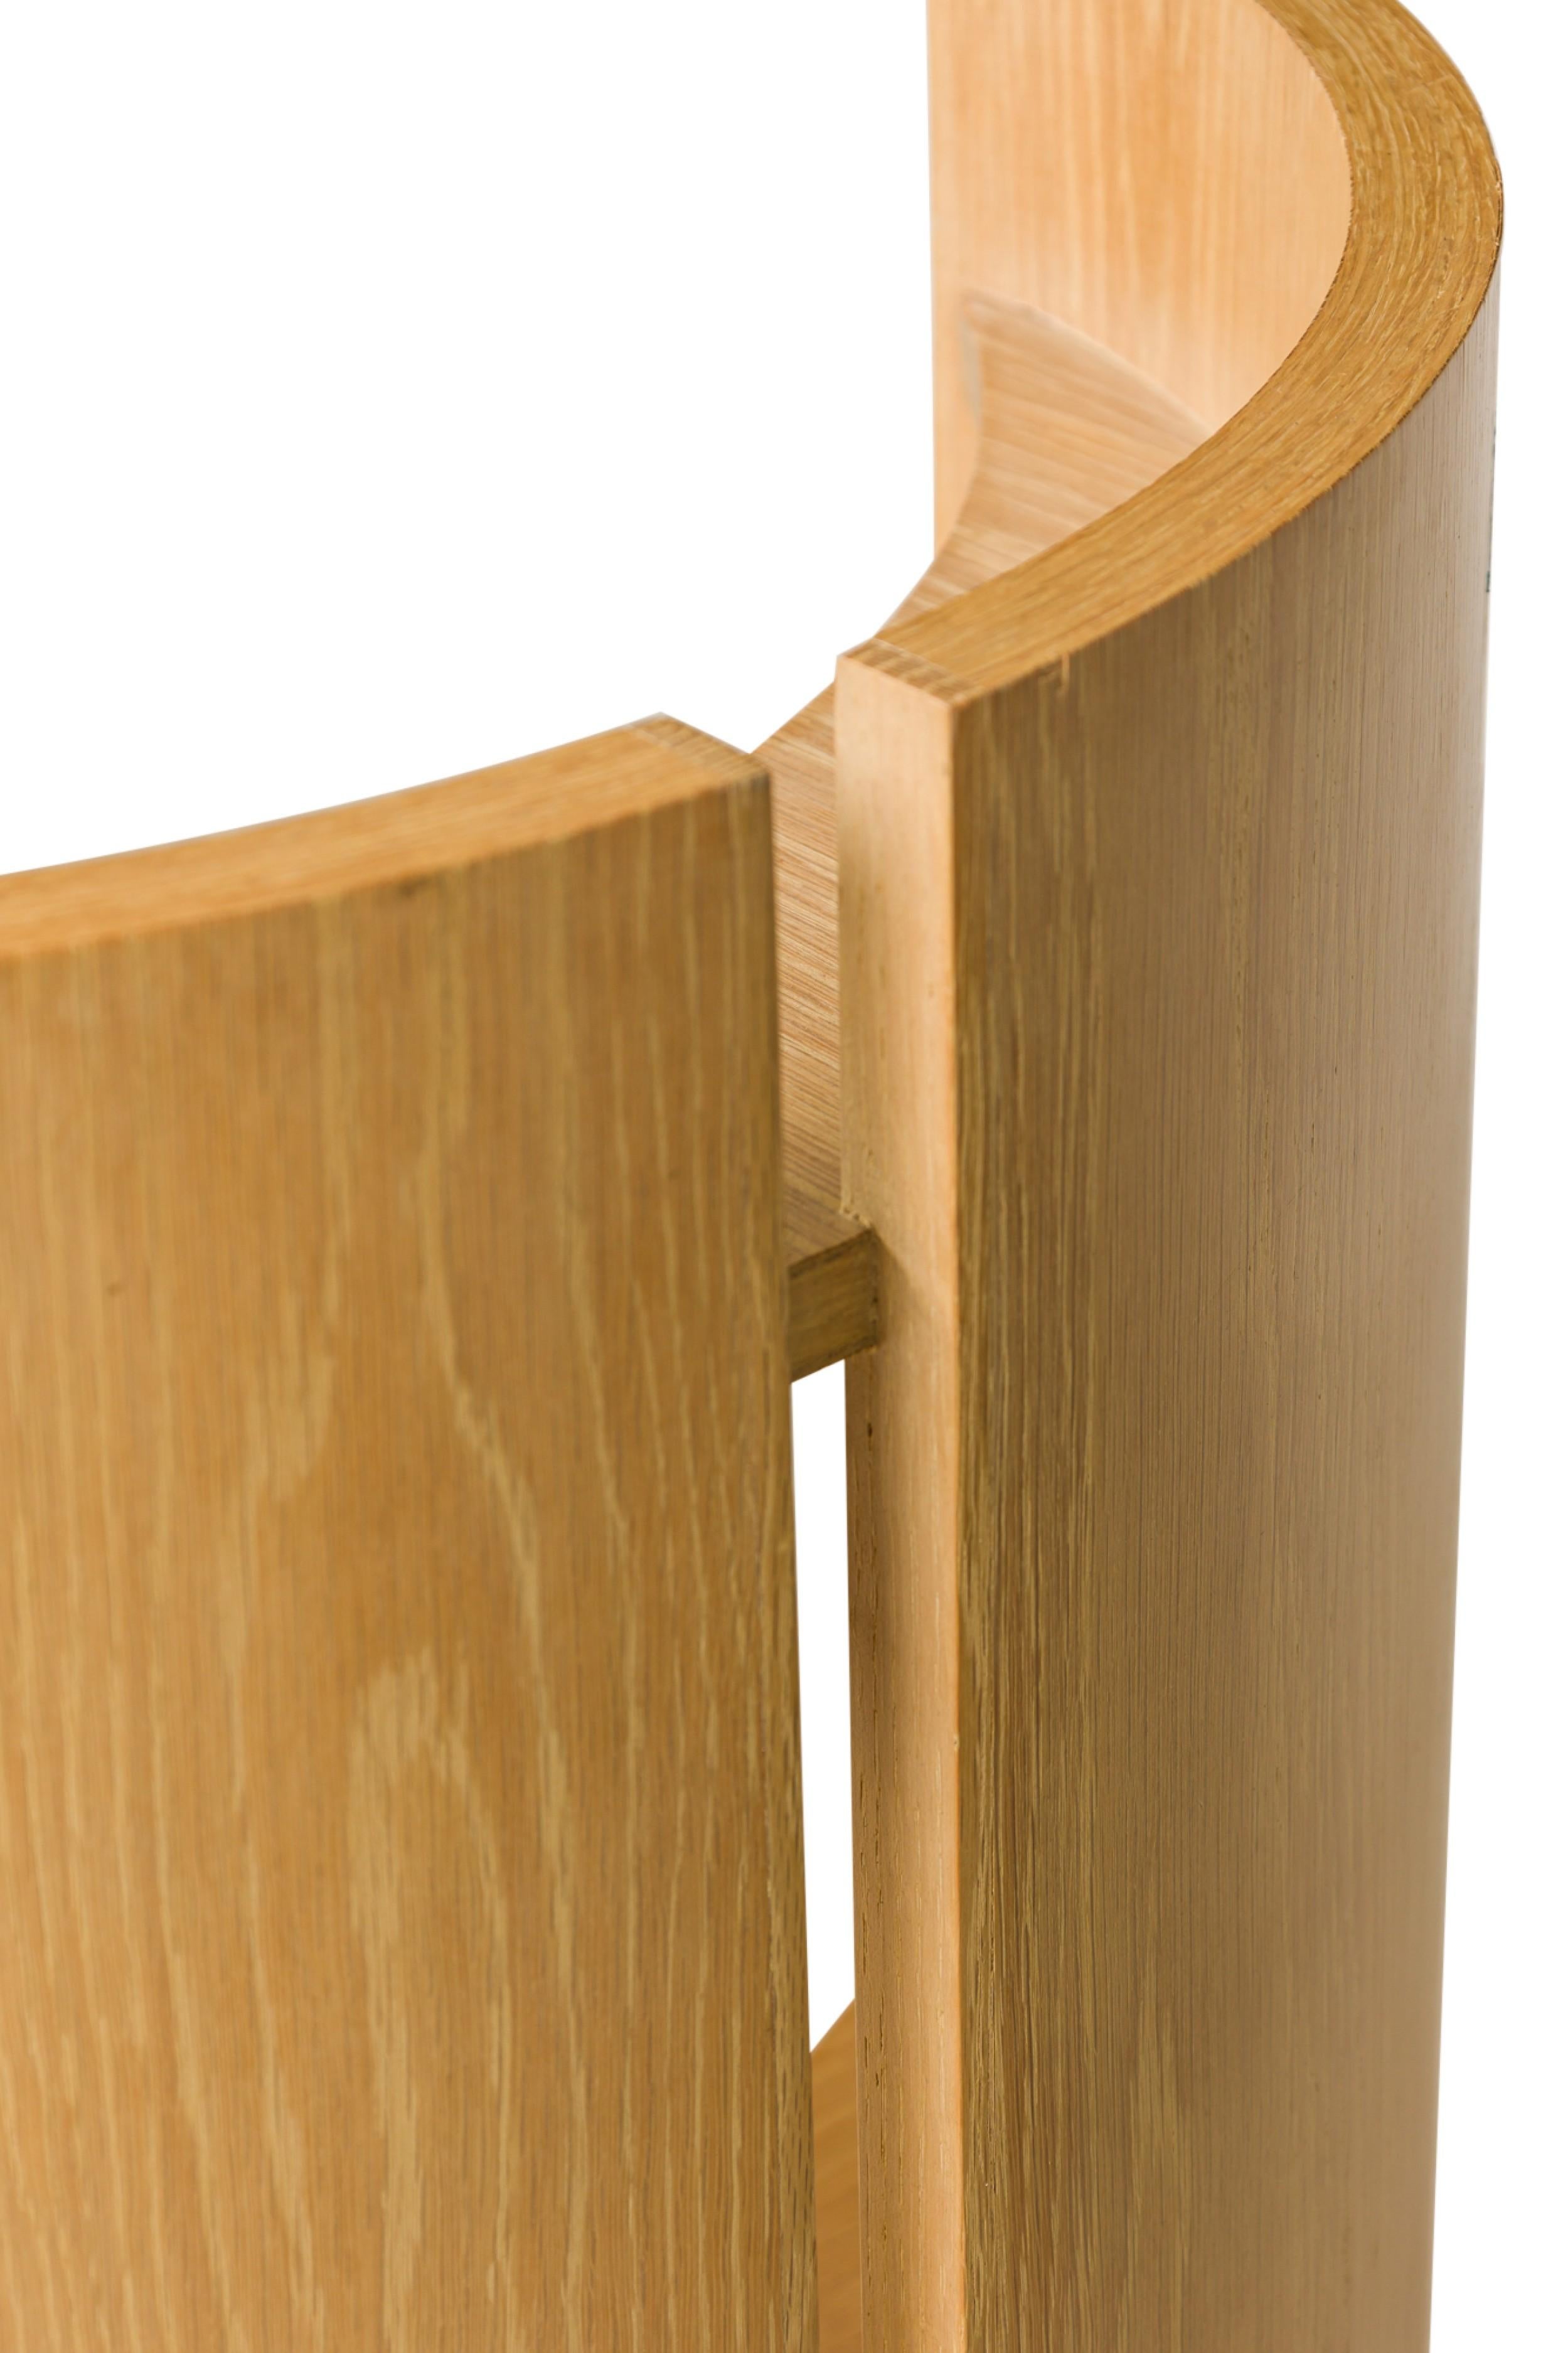 Coiffeuse / vanity table Vintage American Modern en placage de chêne cérusé en deux parties : une pièce de bois démilune avec étagère centrale, et une pièce de cabinet cylindrique avec quatre tiroirs montés avec des poignées de tiroirs en métal